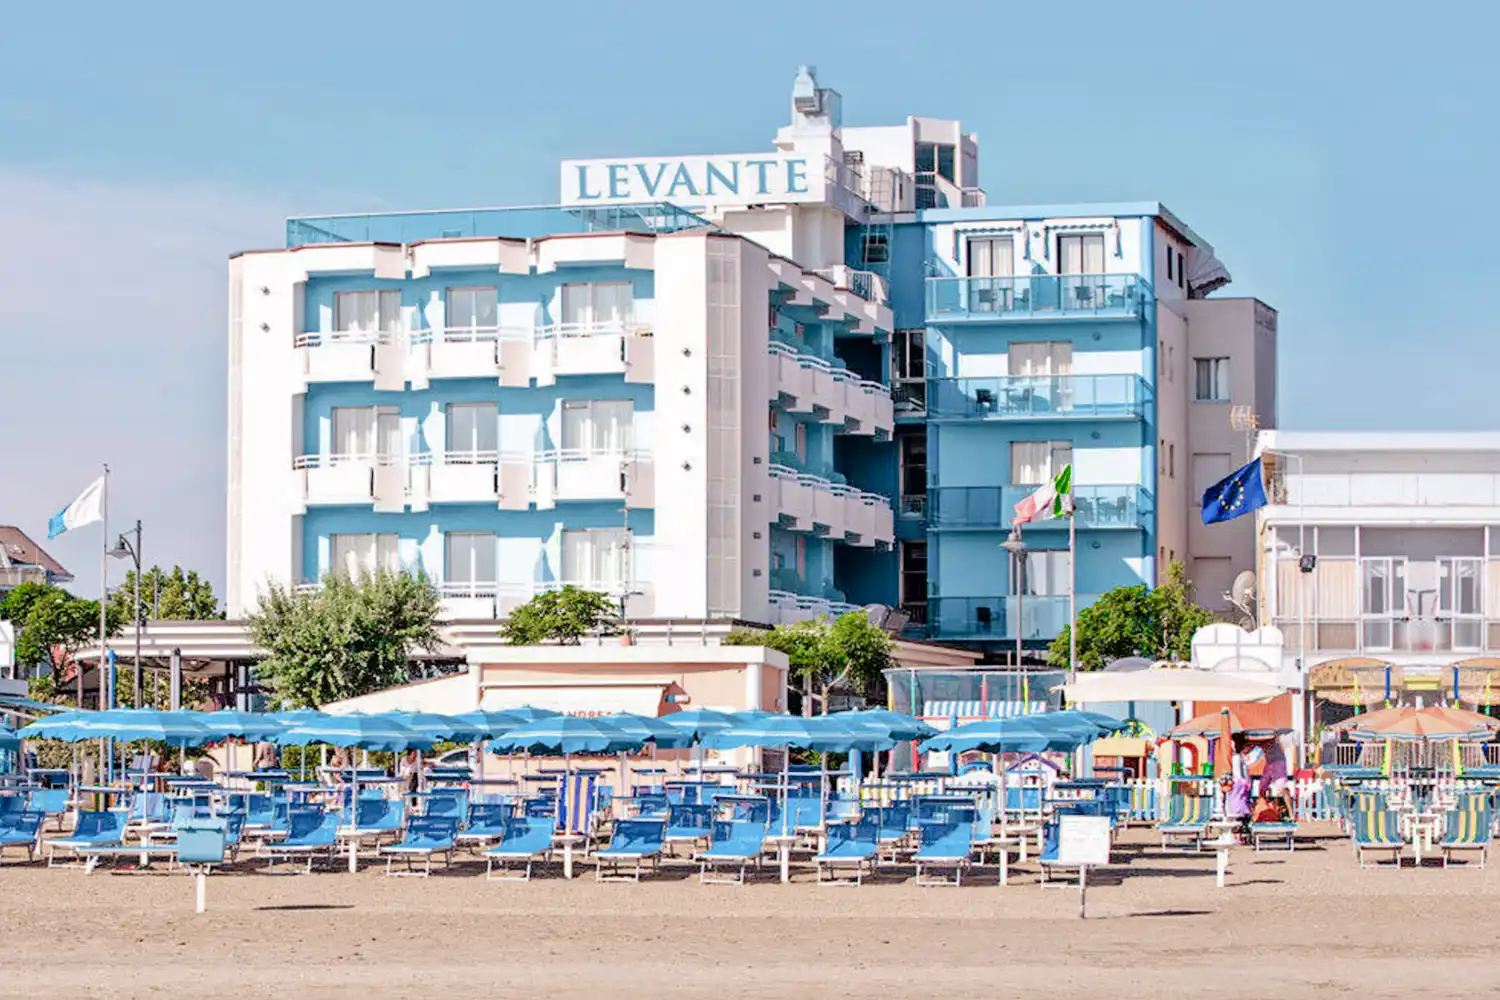 Hotel Levante in Bellaria